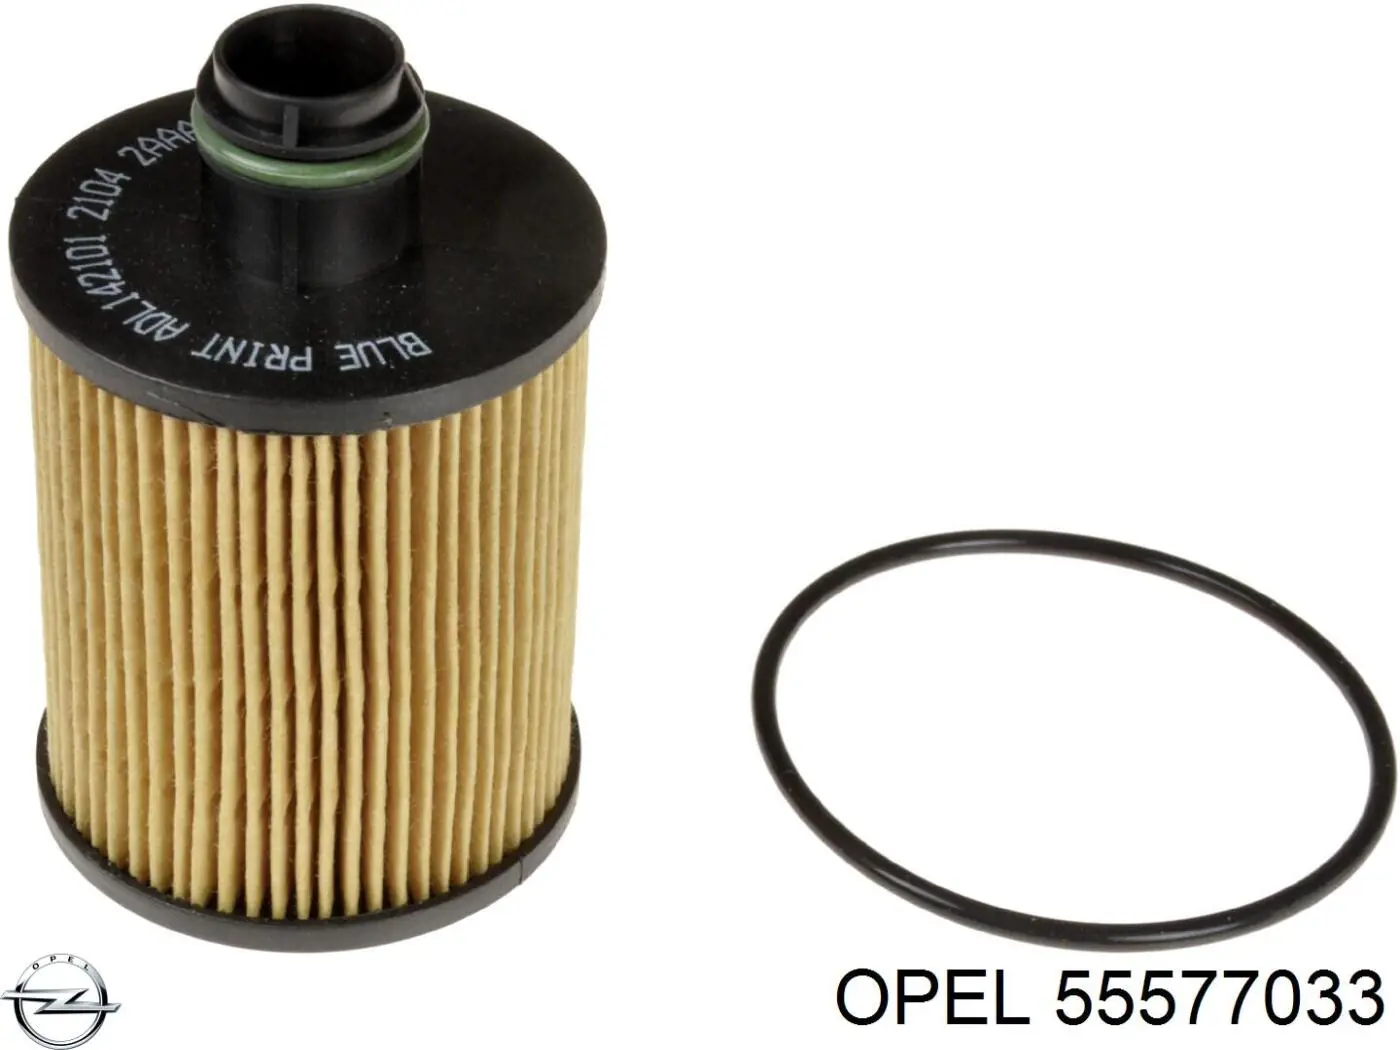 55577033 Opel filtro de aceite